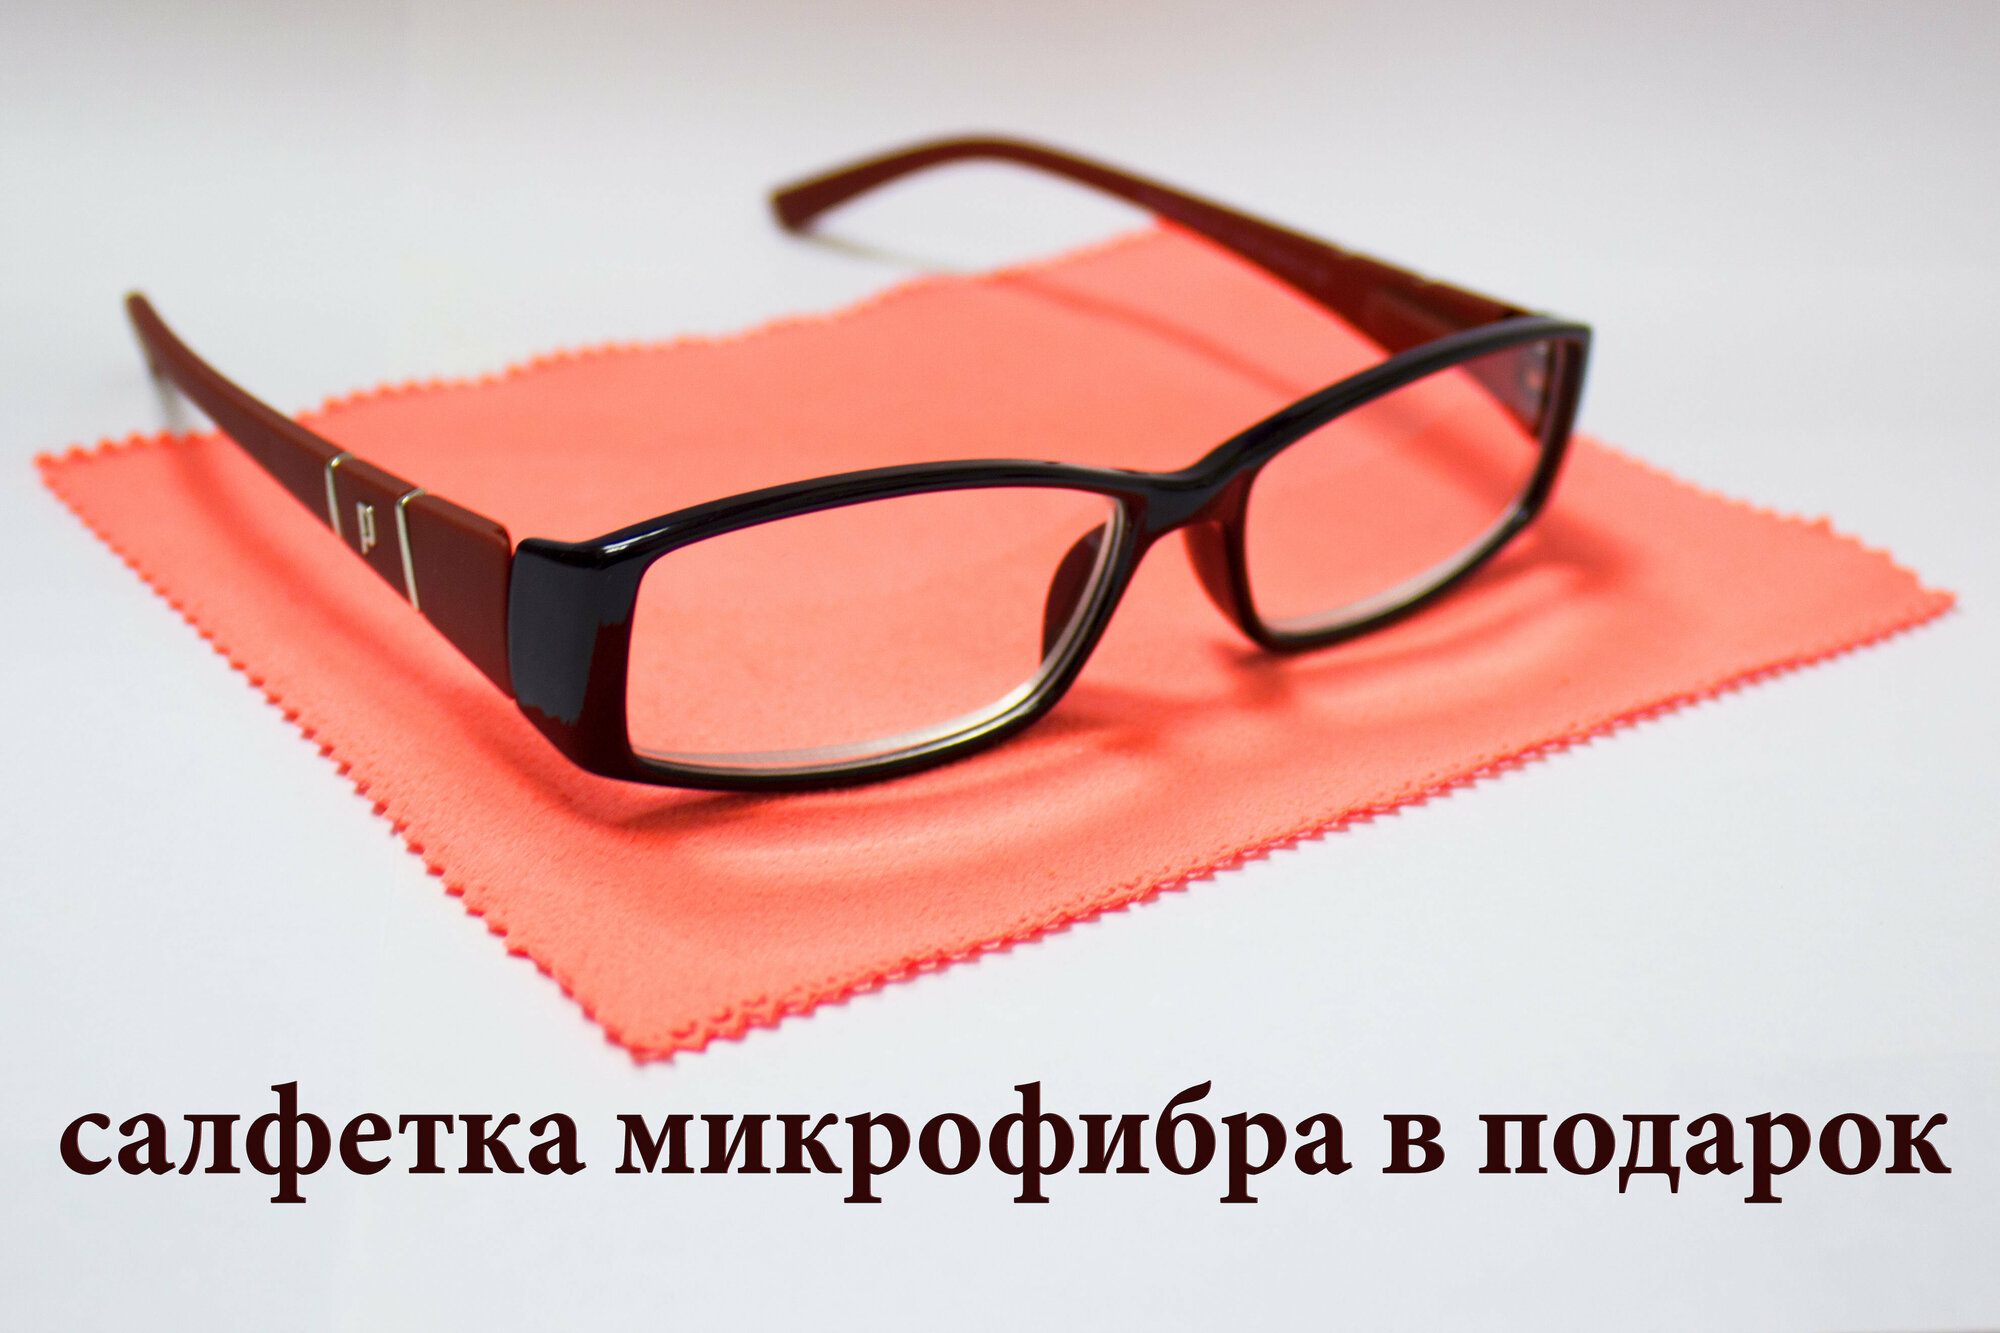 Готовые очки с диоптриями Ralph -4,00/ Очки с диоптриями женские -4,00/ Стильные женские очки/ Очки для зрения -4,00